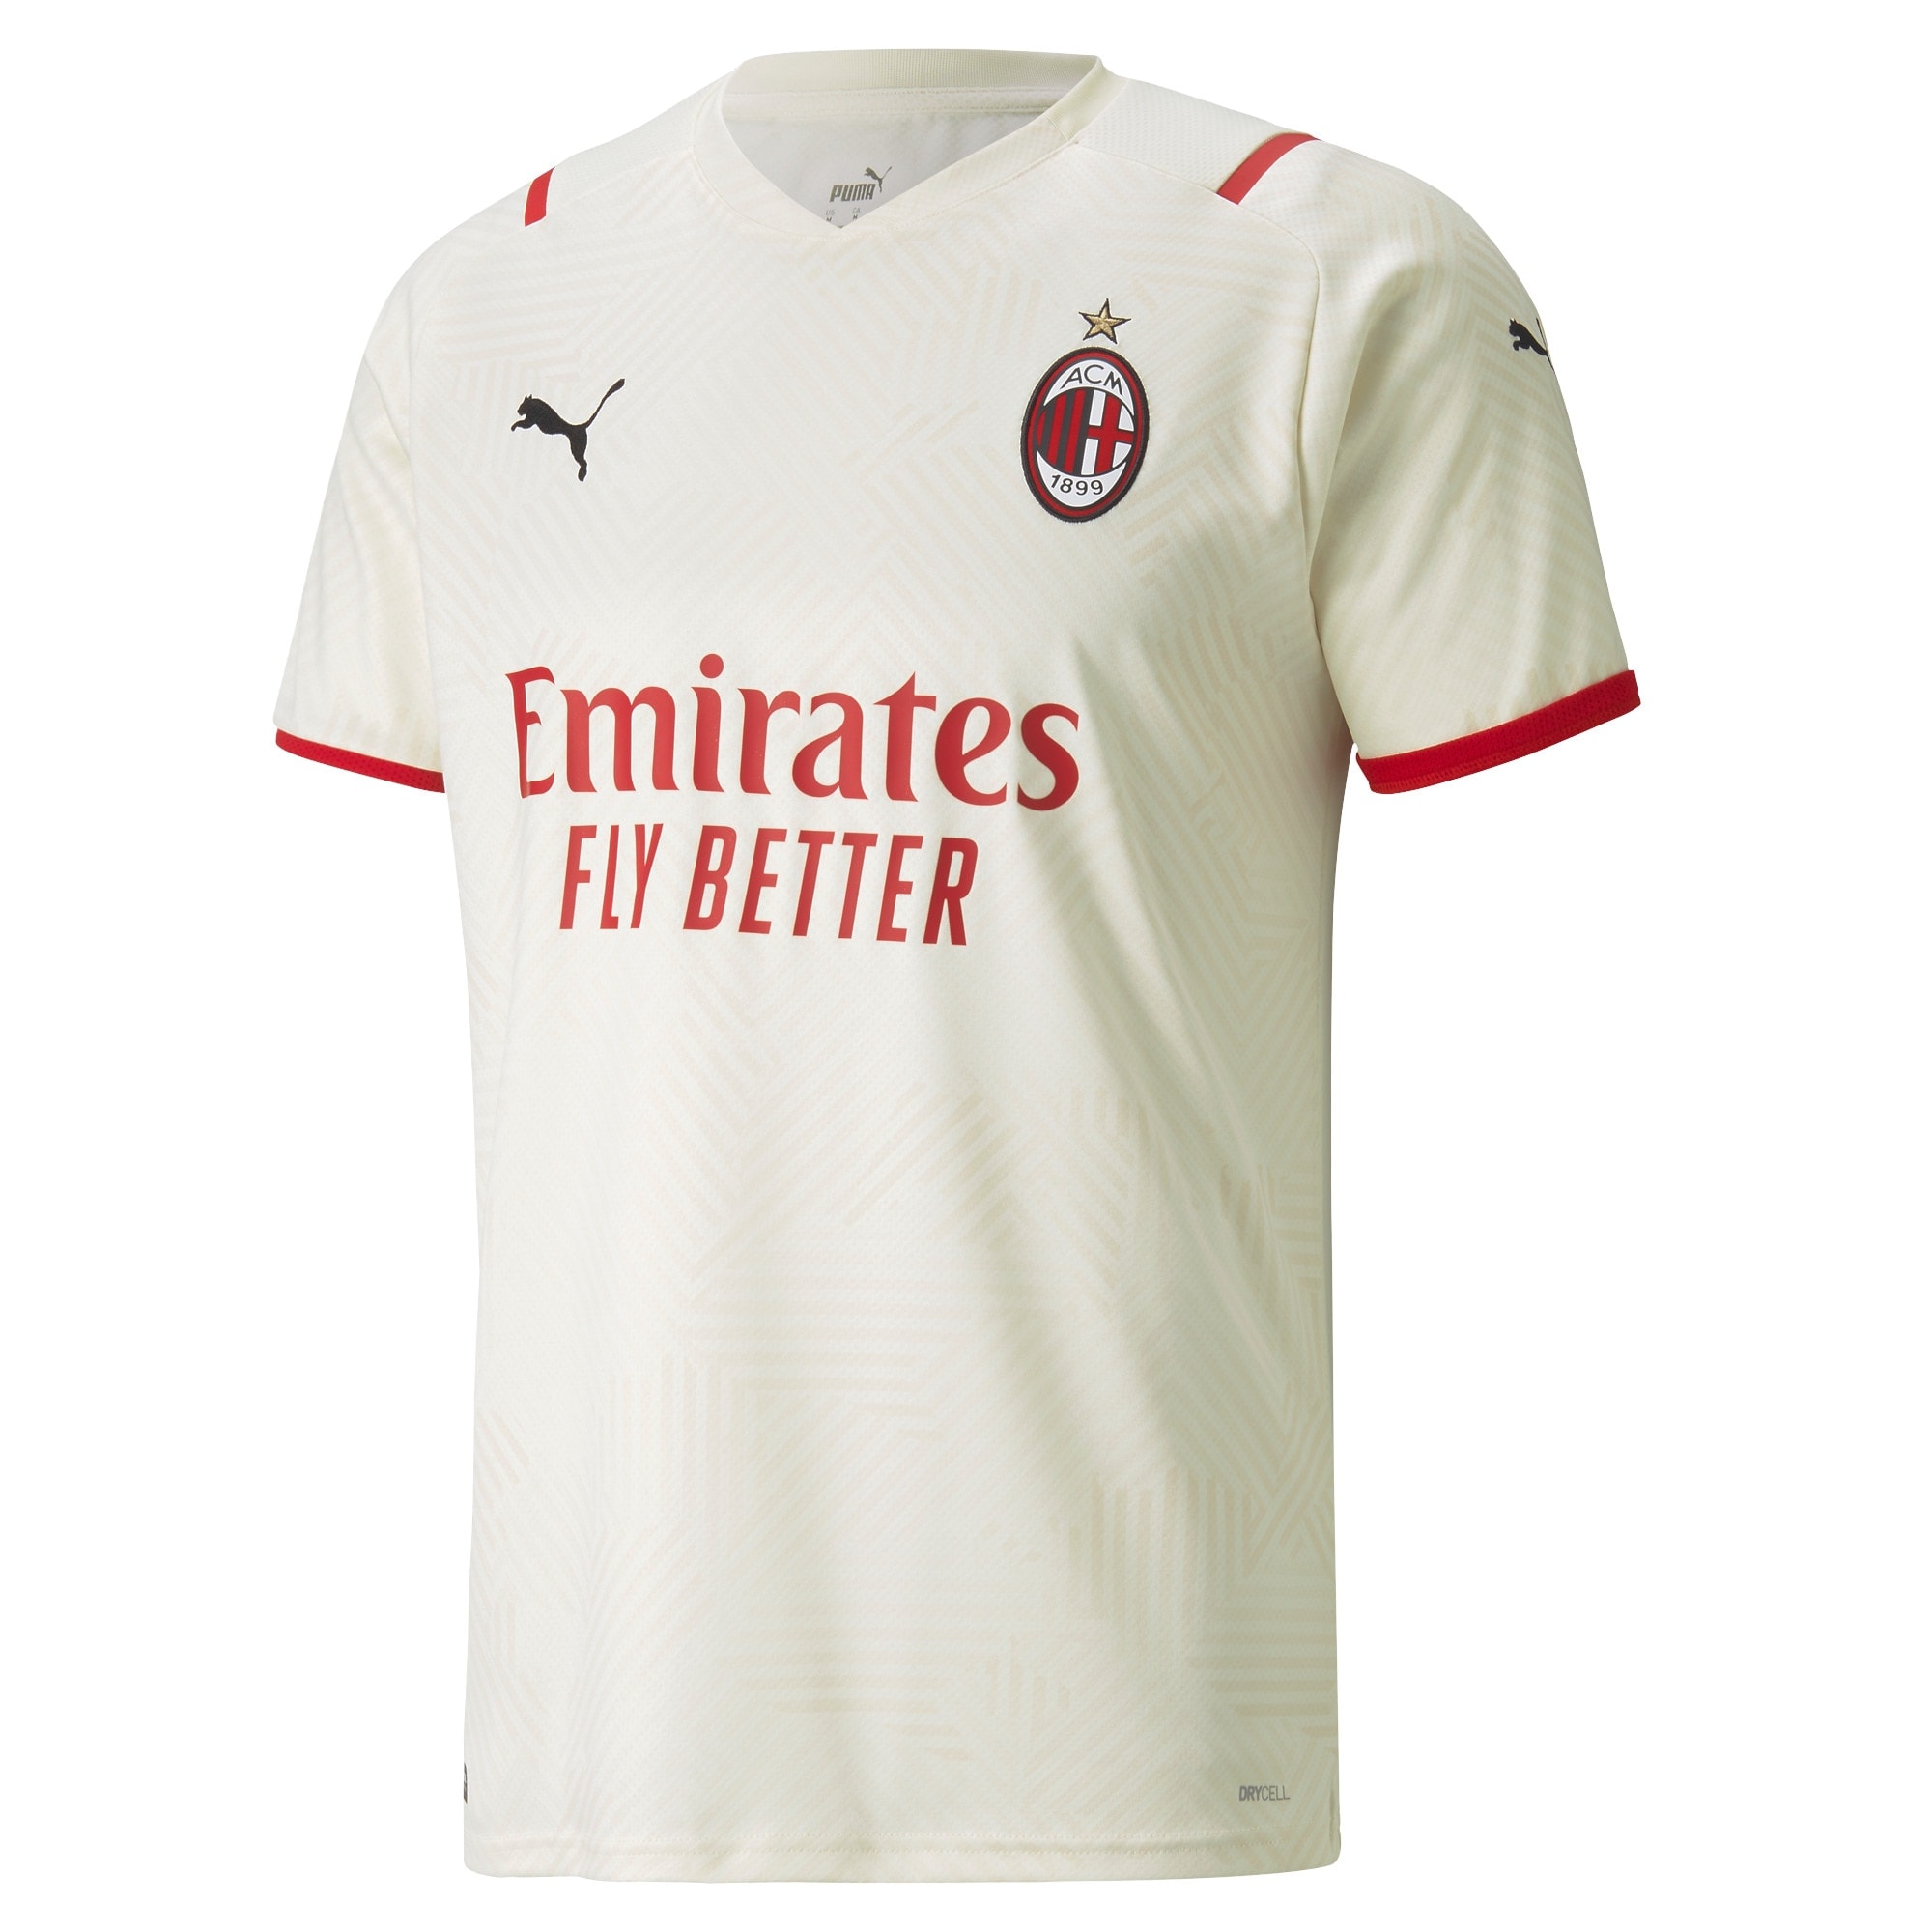 AC Milan Away Shirt 2021-22 with Giroud 9 printing